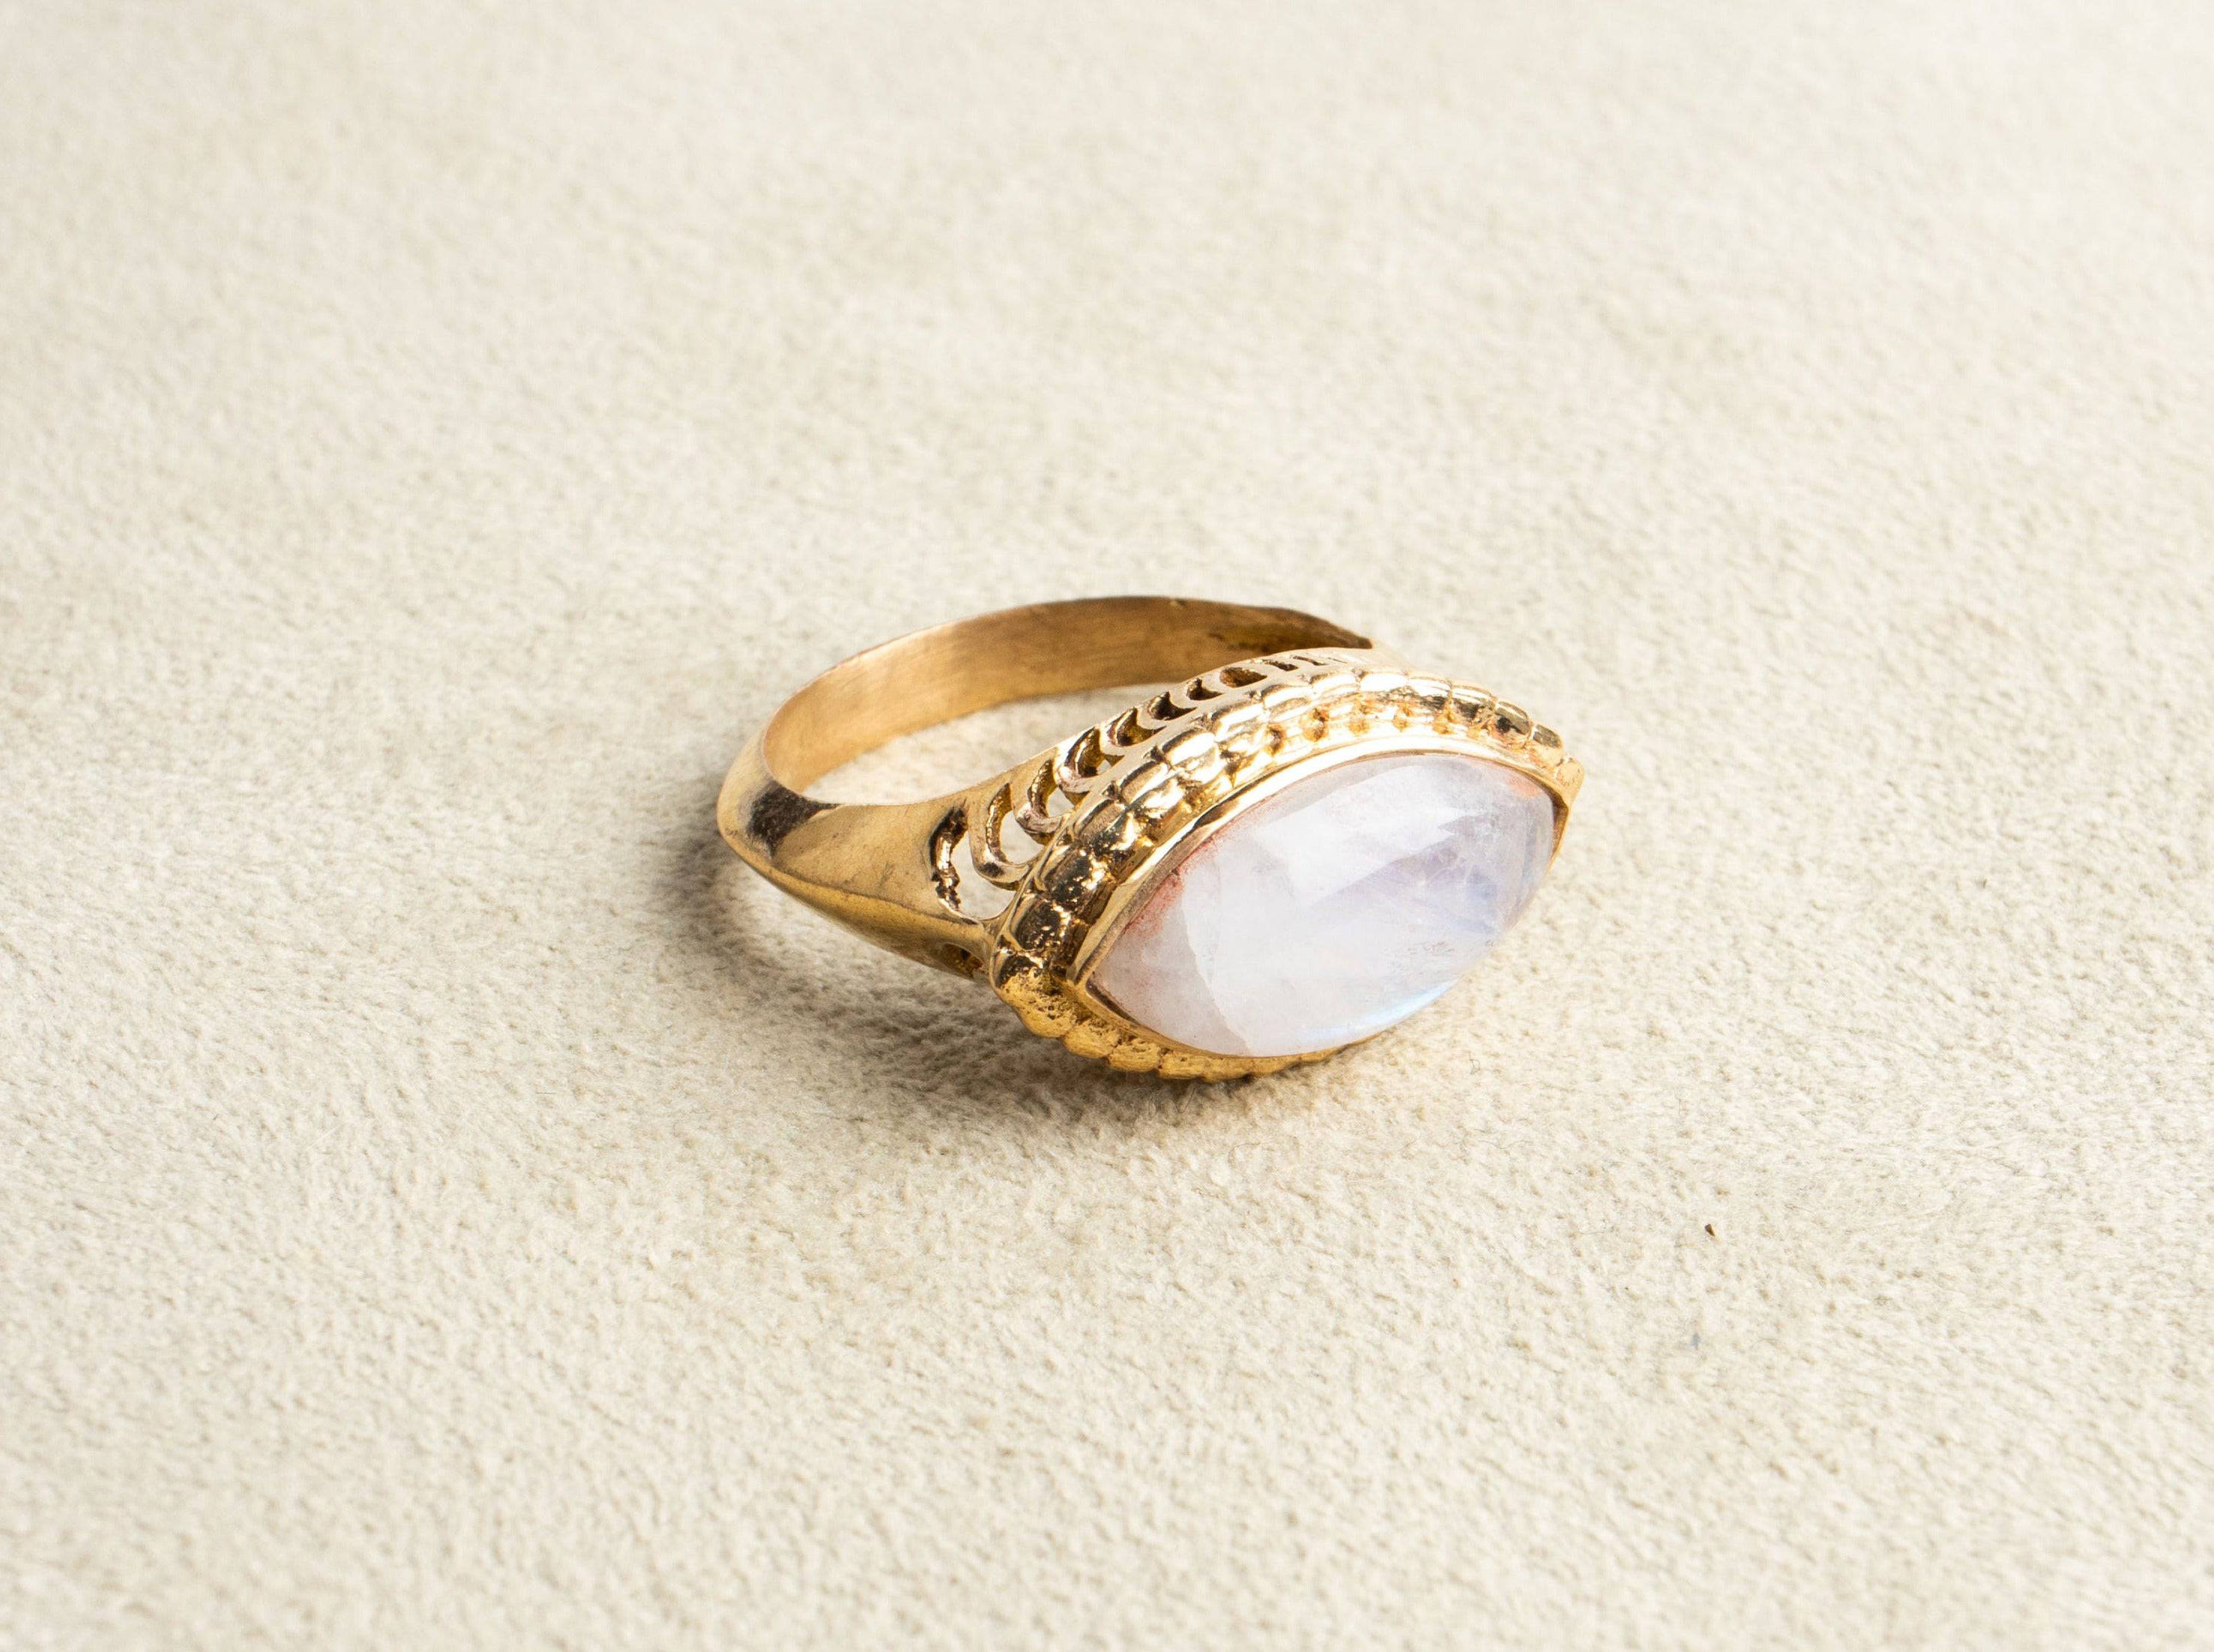 Augenförmiger Mondstein Ring groß gold handgemacht - NooeBerlin